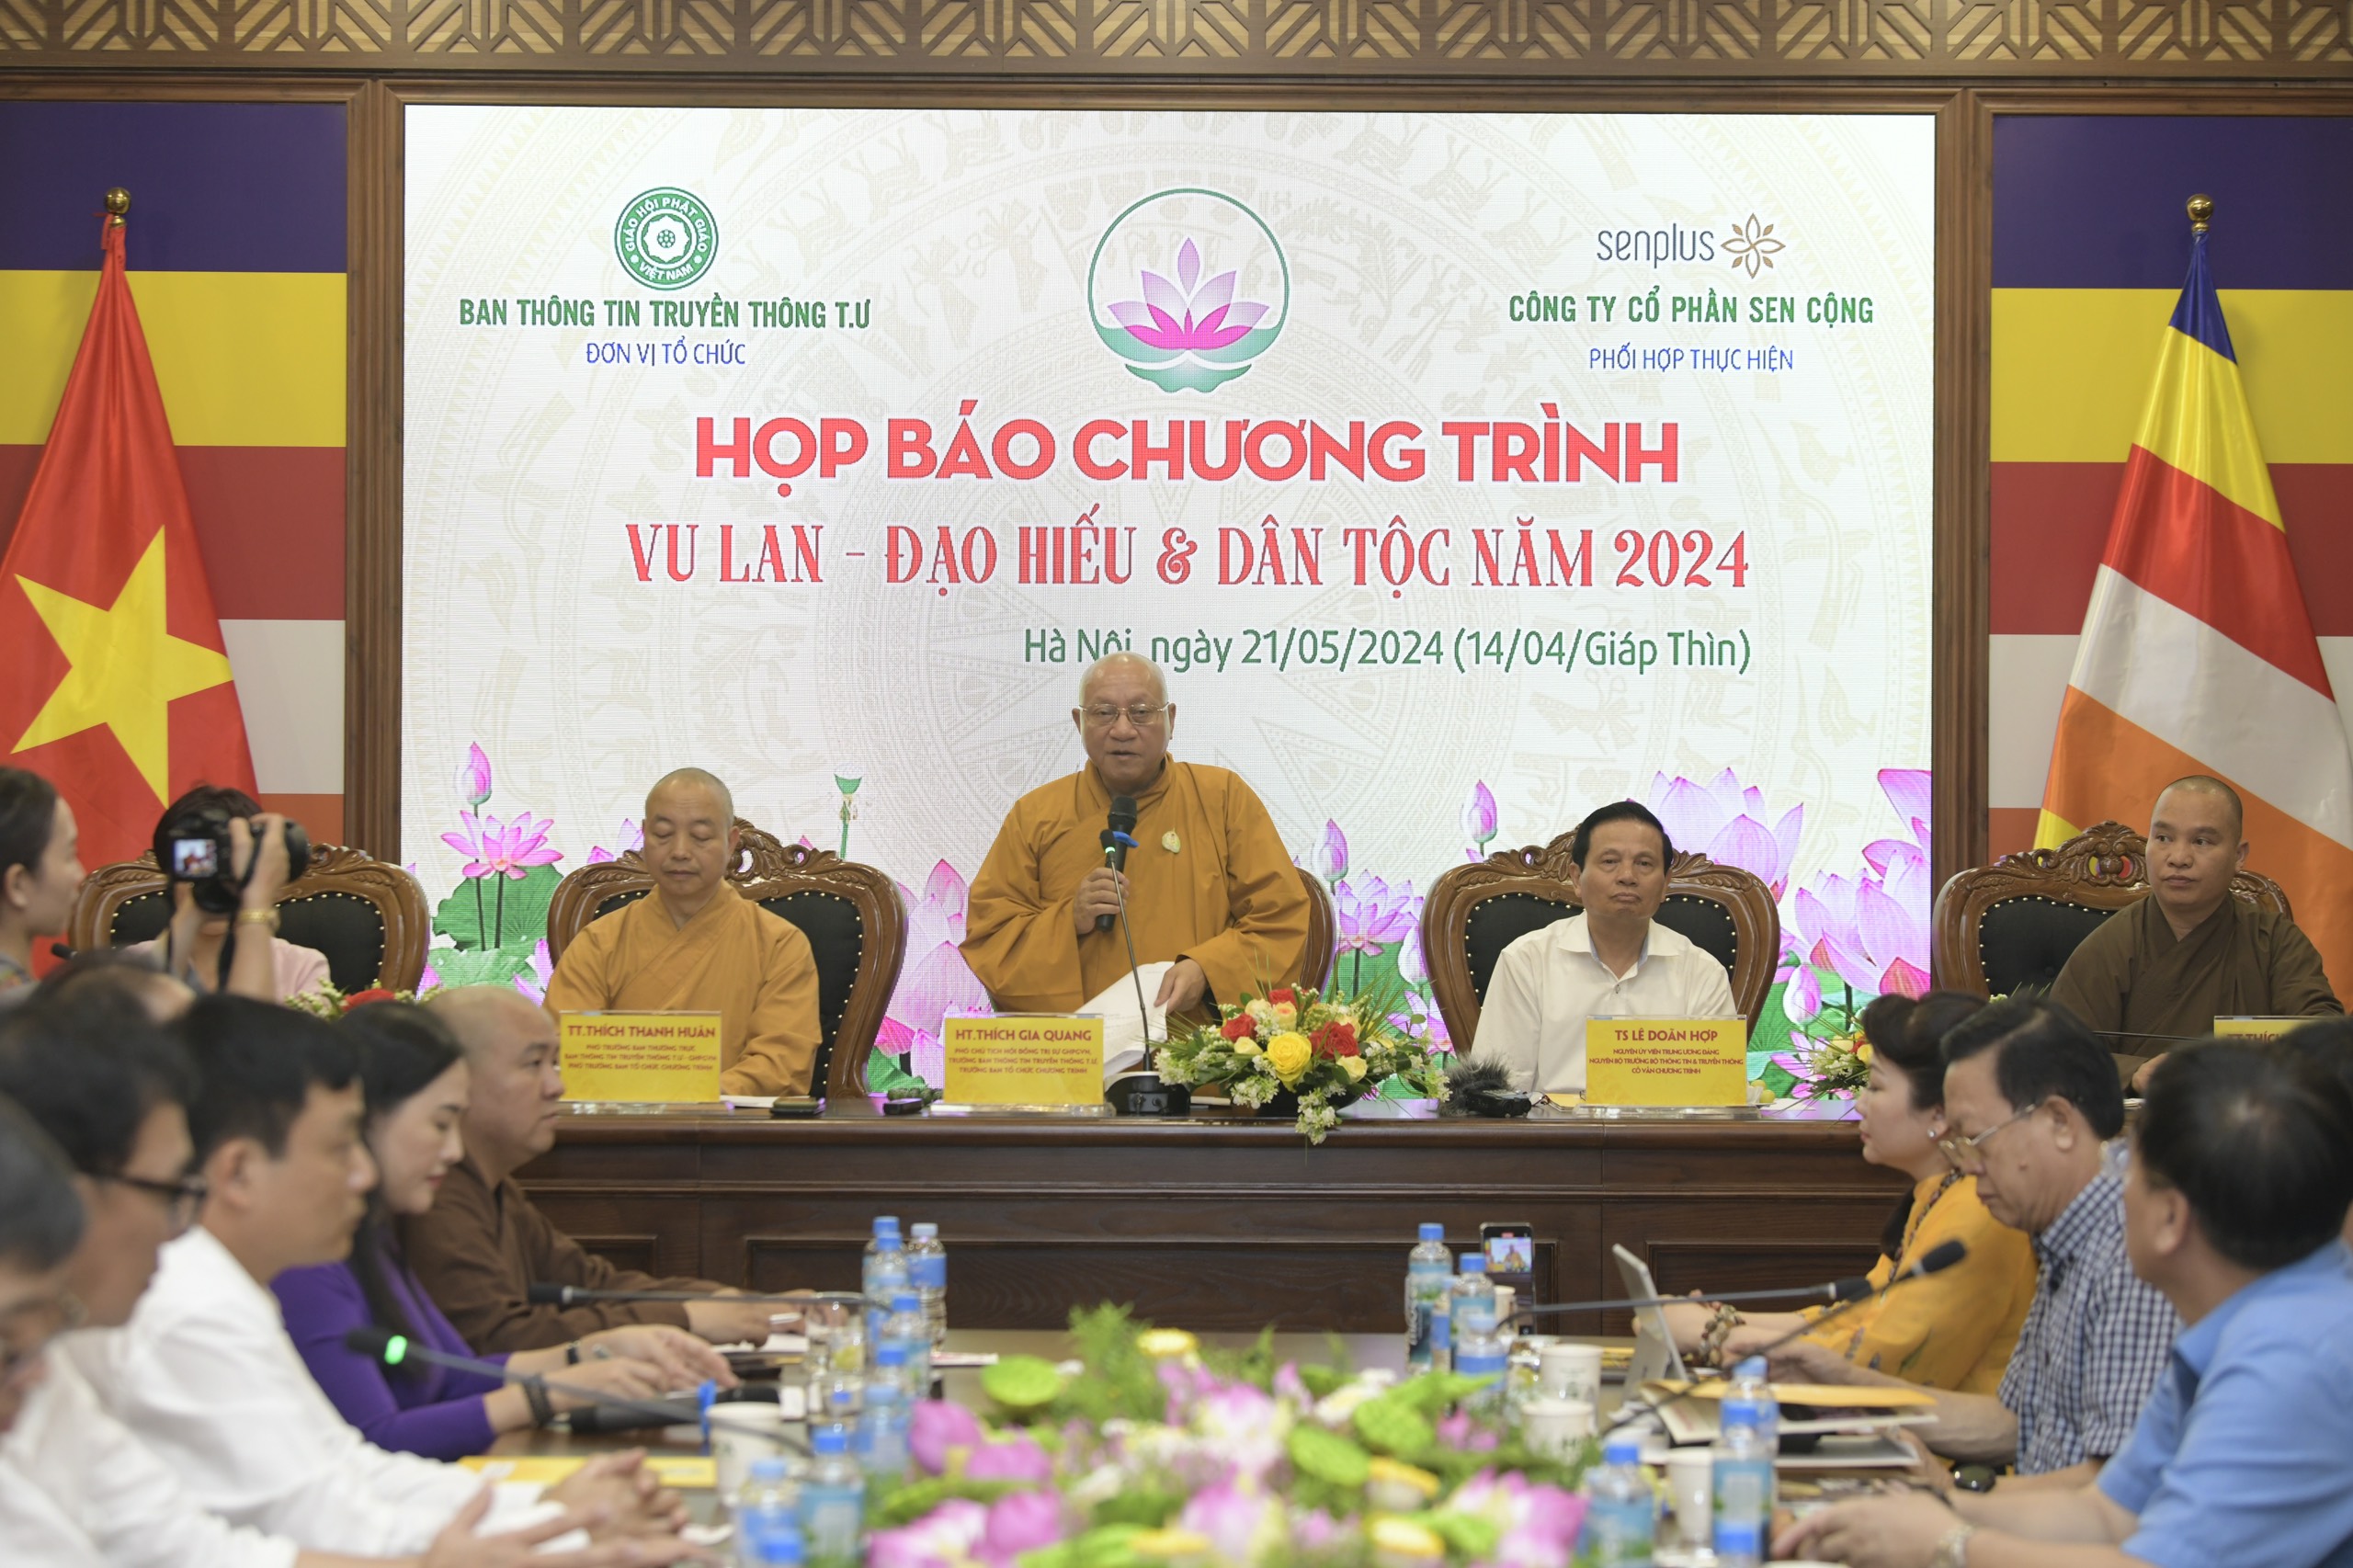 Giáo hội Phật giáo Việt Nam tổ chức chương trình nghệ thuật đặc biệt đề cao đạo hiếu, tri ân tổ quốc